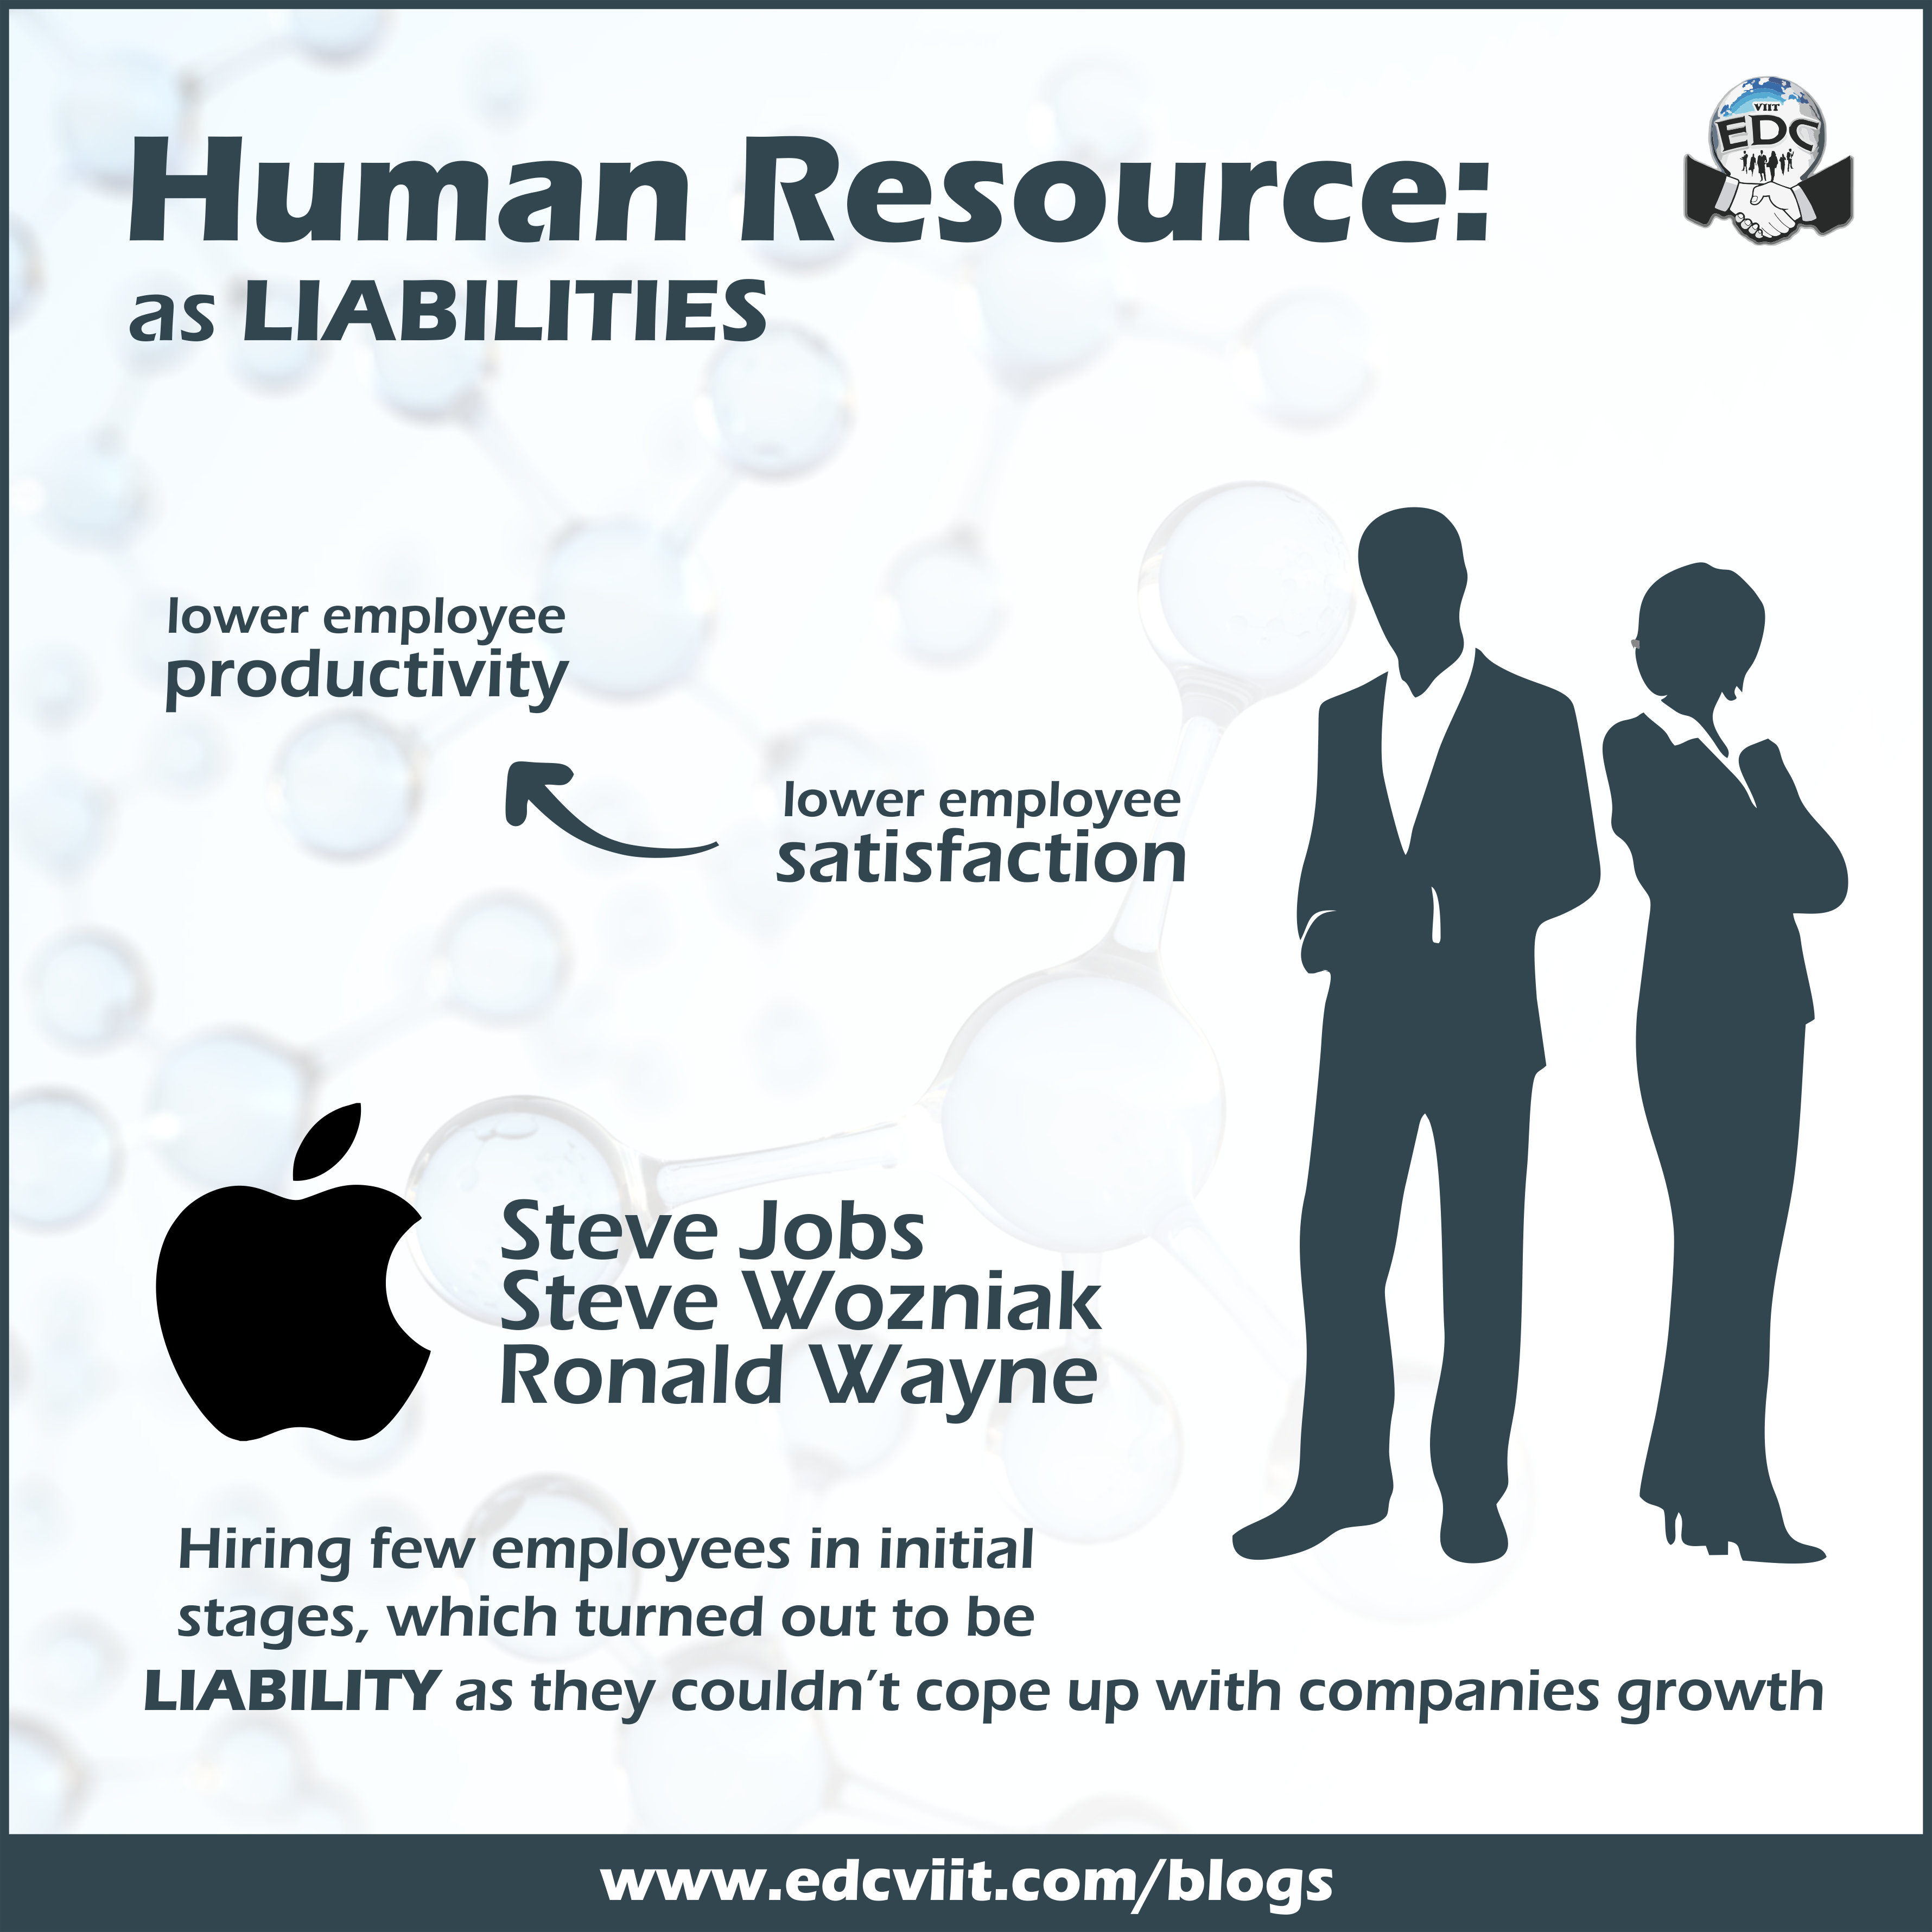 HR as an Liability